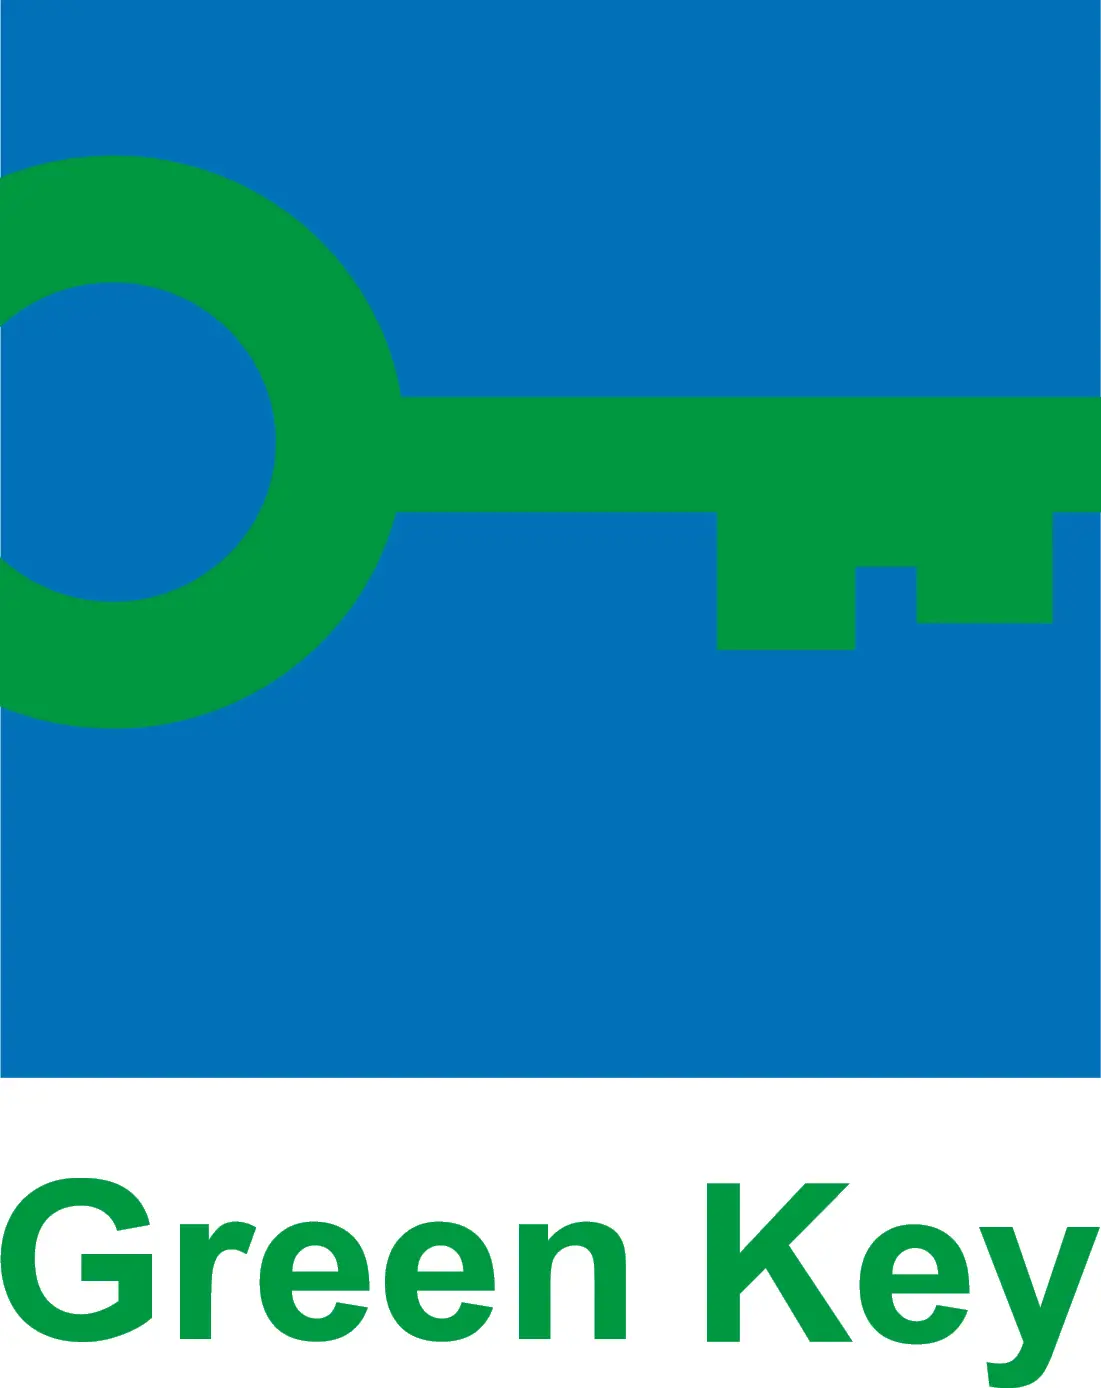 green-key